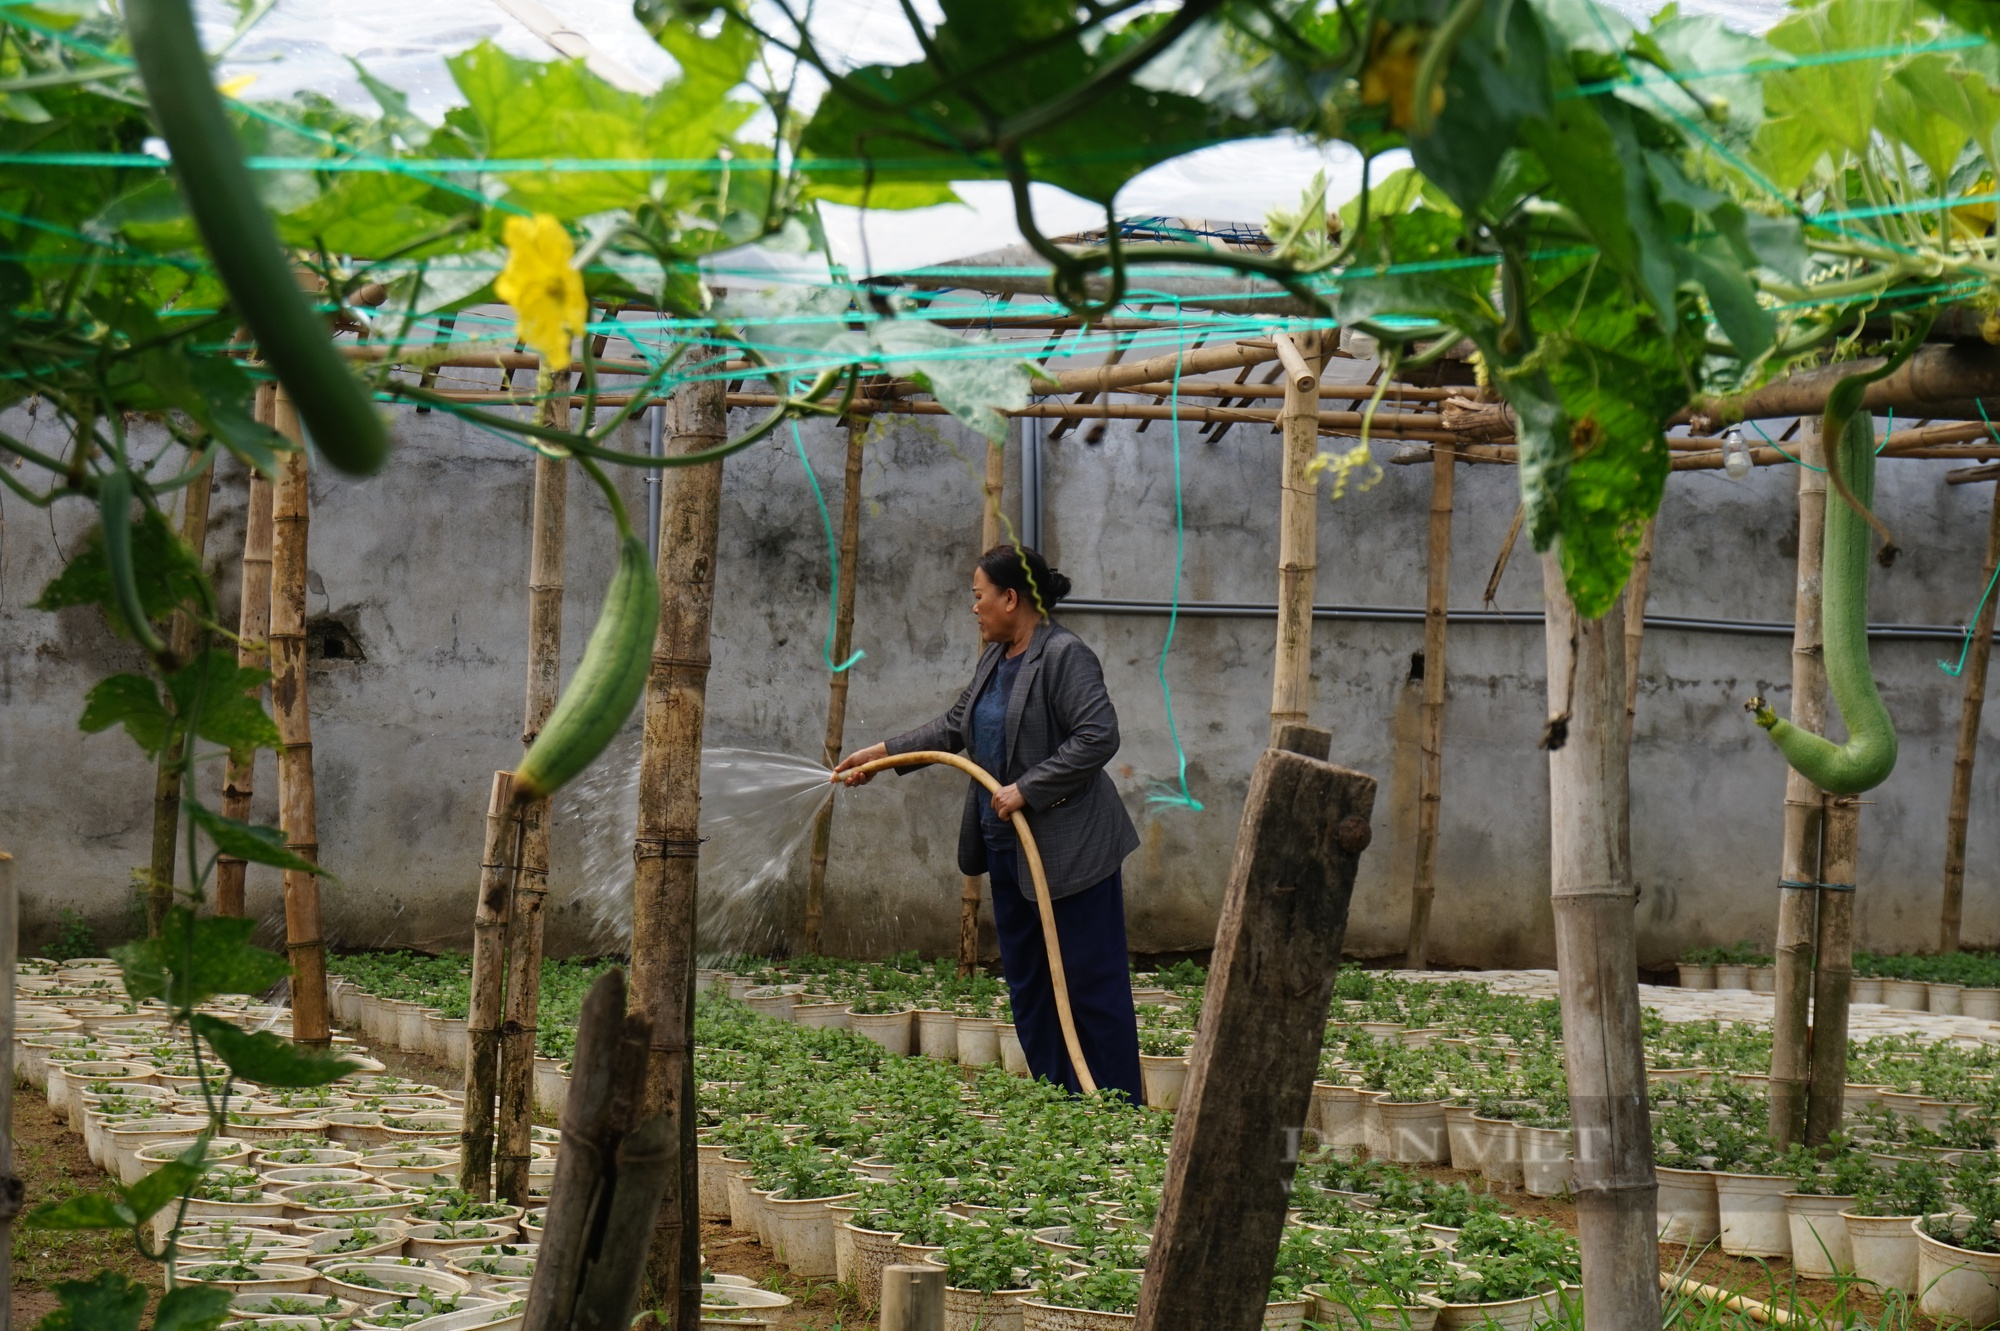 Đam mê trồng hoa, một phụ nữ ở Đà Nẵng thu lãi hàng trăm triệu mỗi năm - Ảnh 8.